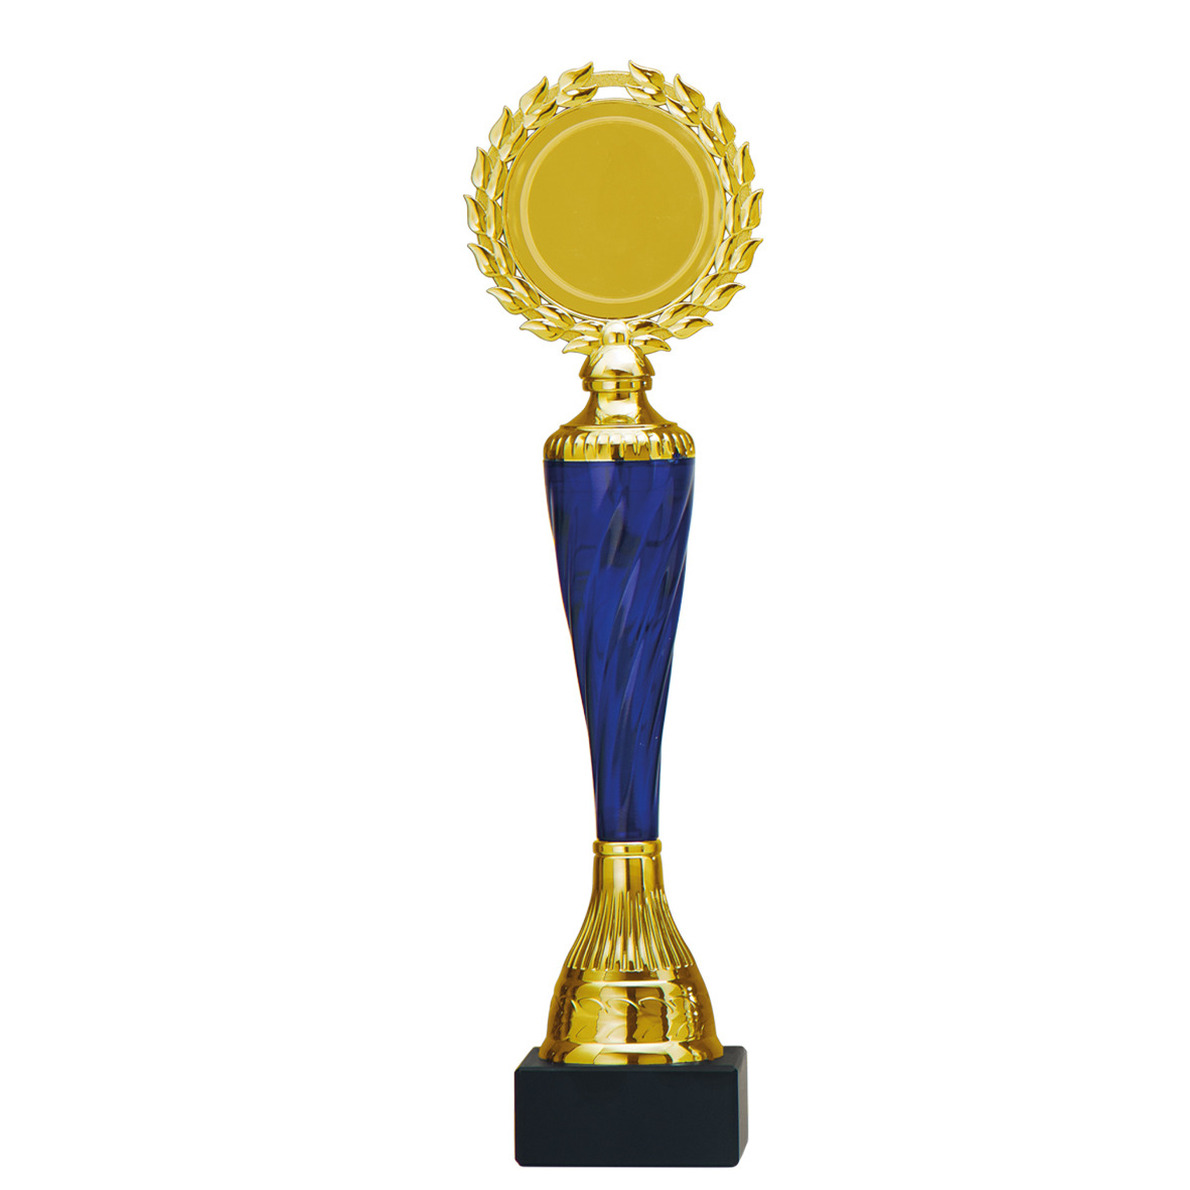 Luxe trofee-prijs goud-blauw middenstuk kunststof 32 x 8 cm sportprijs